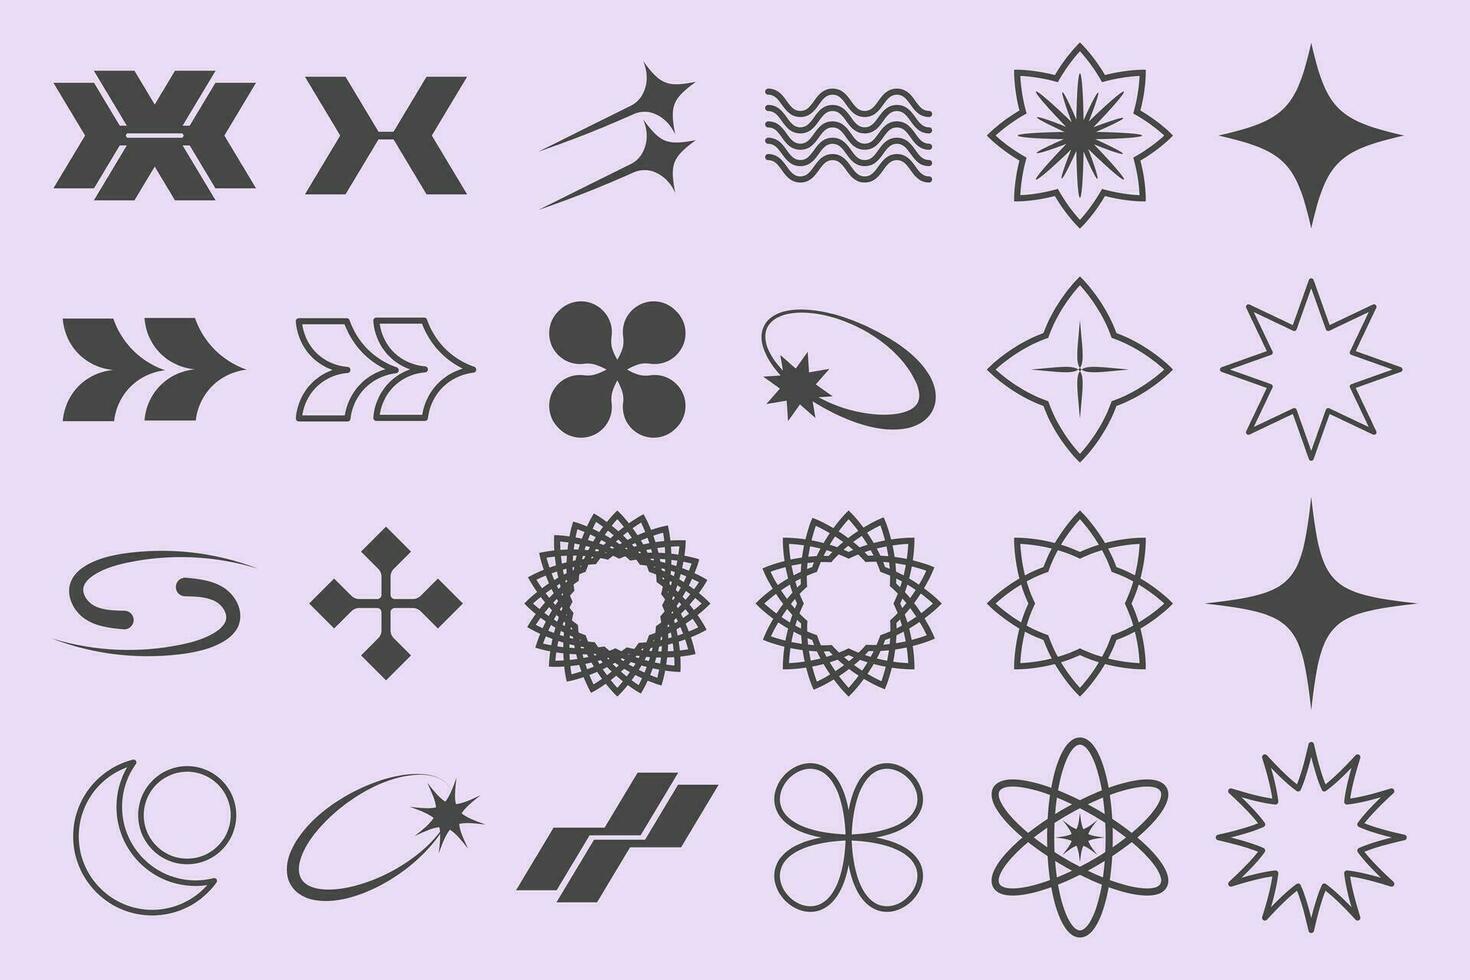 y2k símbolo retrofuturismo colocar, diseño elementos para logo plantillas en moderno minimalista estilo. retro estrellas íconos y gráfico elementos para carteles vector